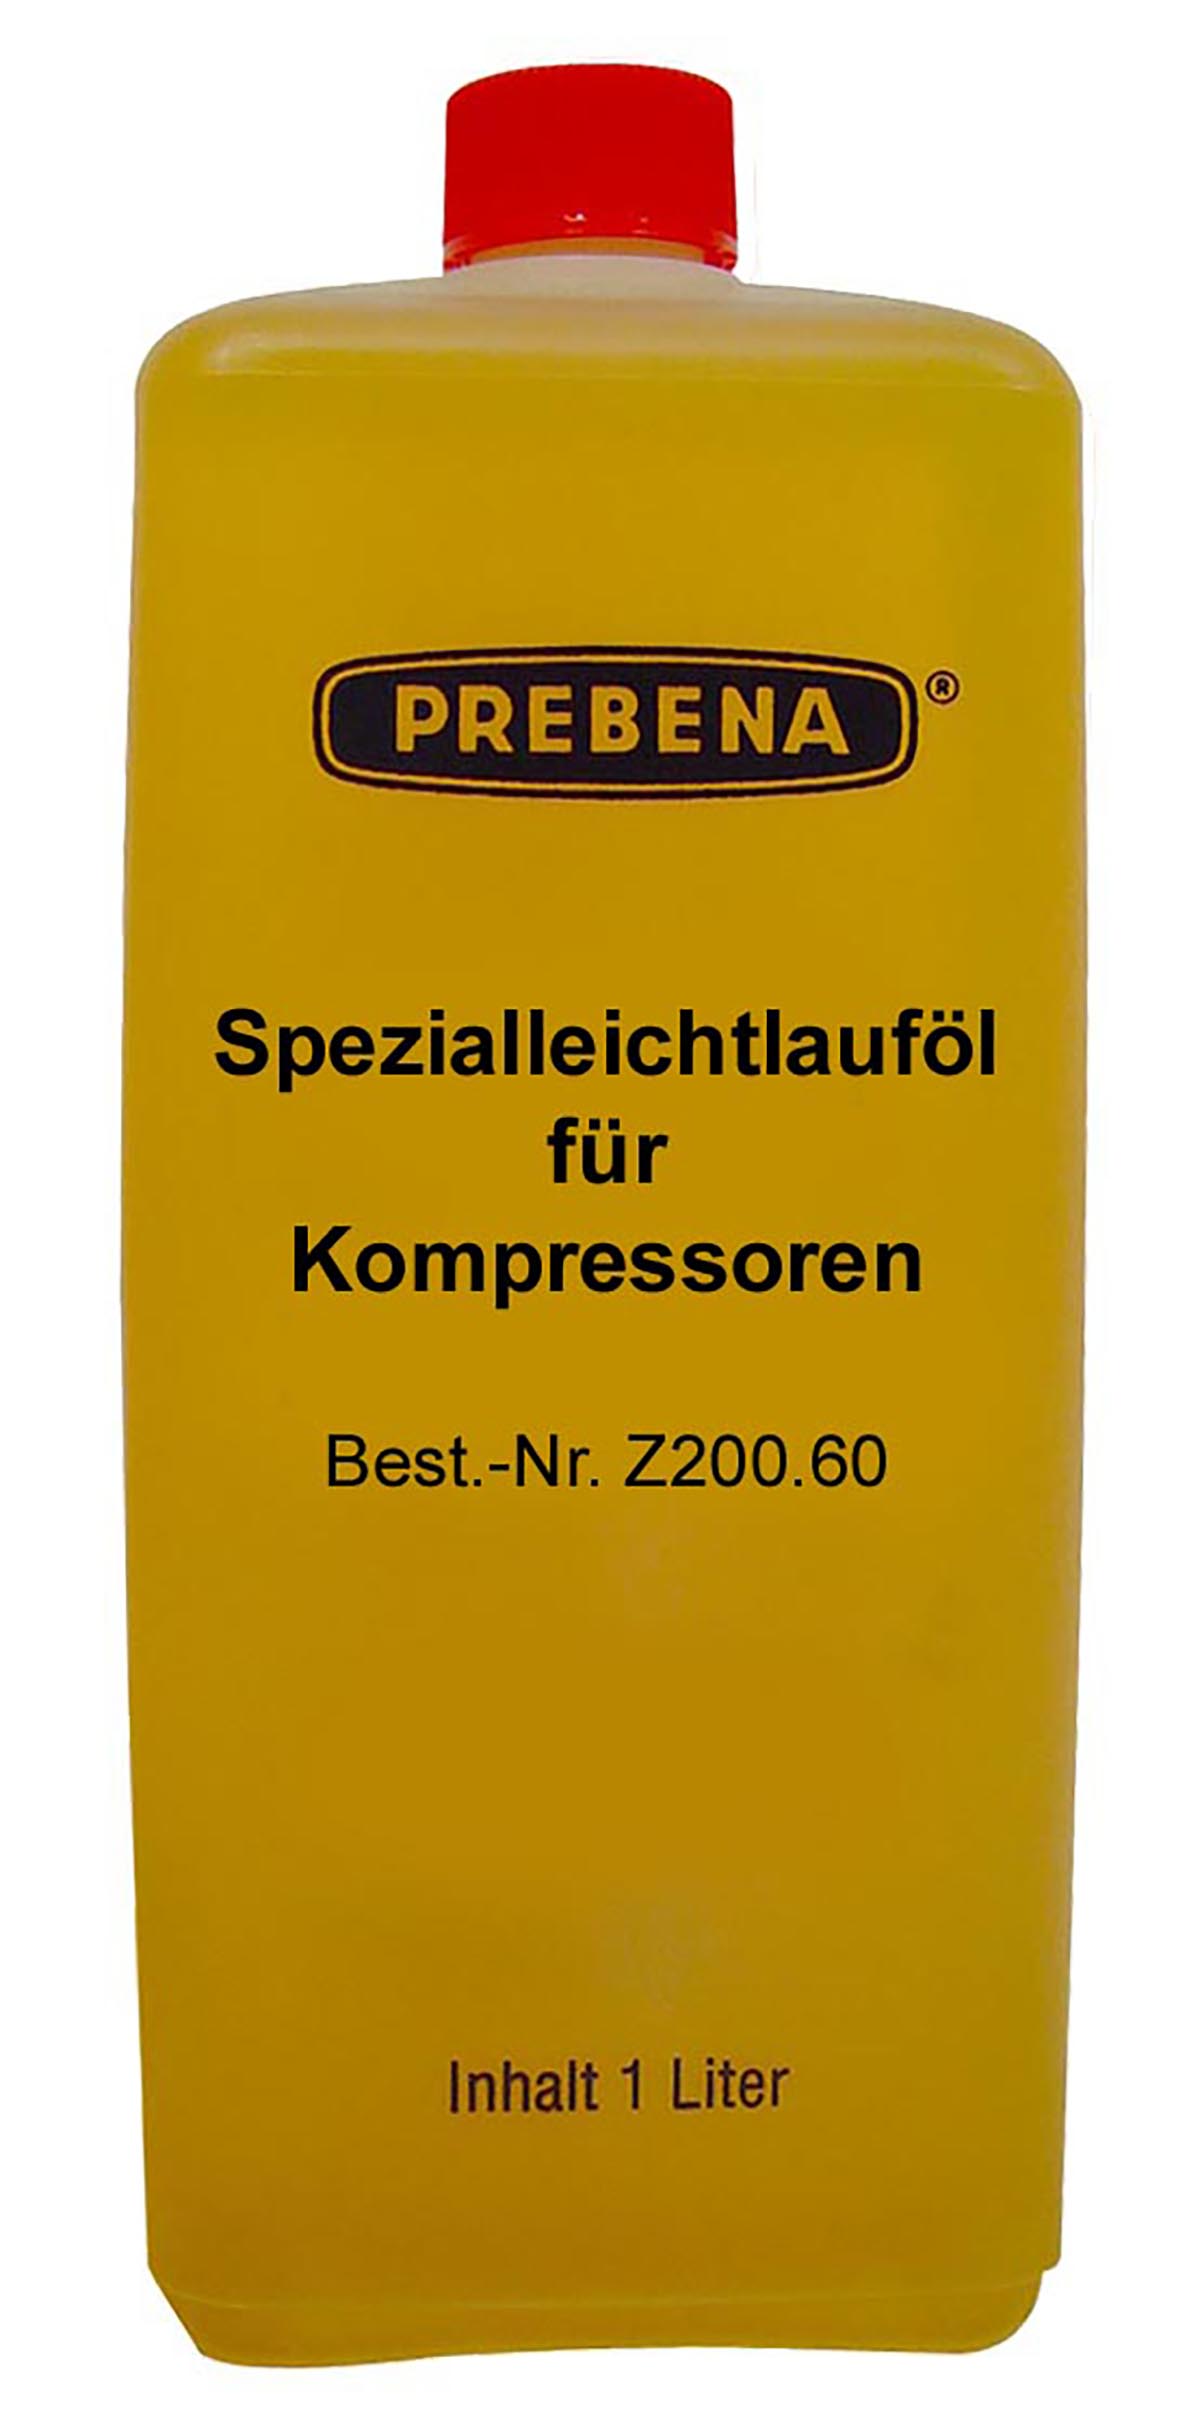 Z200.60 Kompressorenöl 1l synthetisch (leichtlauföl)